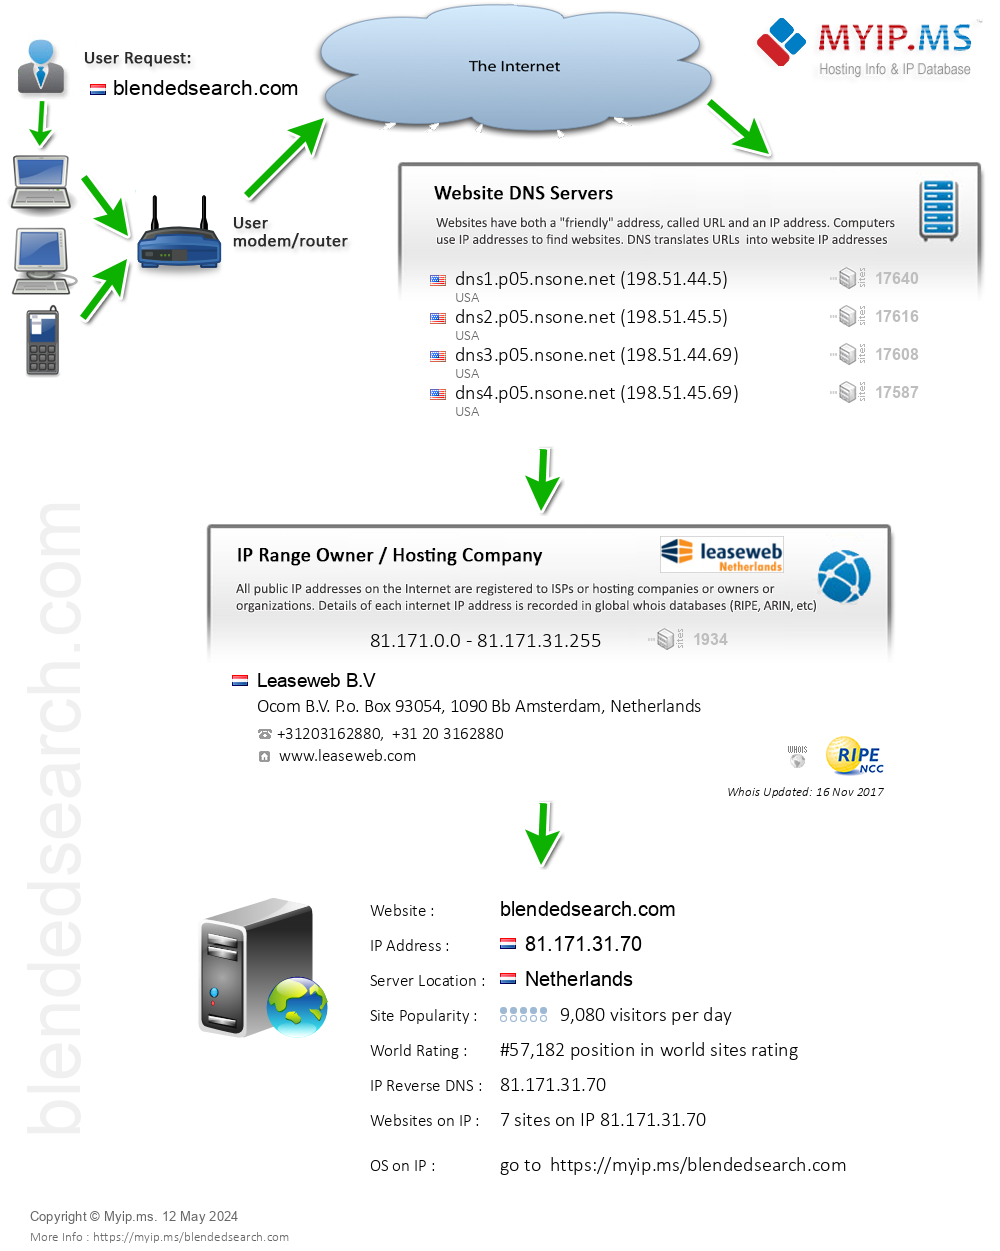 Blendedsearch.com - Website Hosting Visual IP Diagram